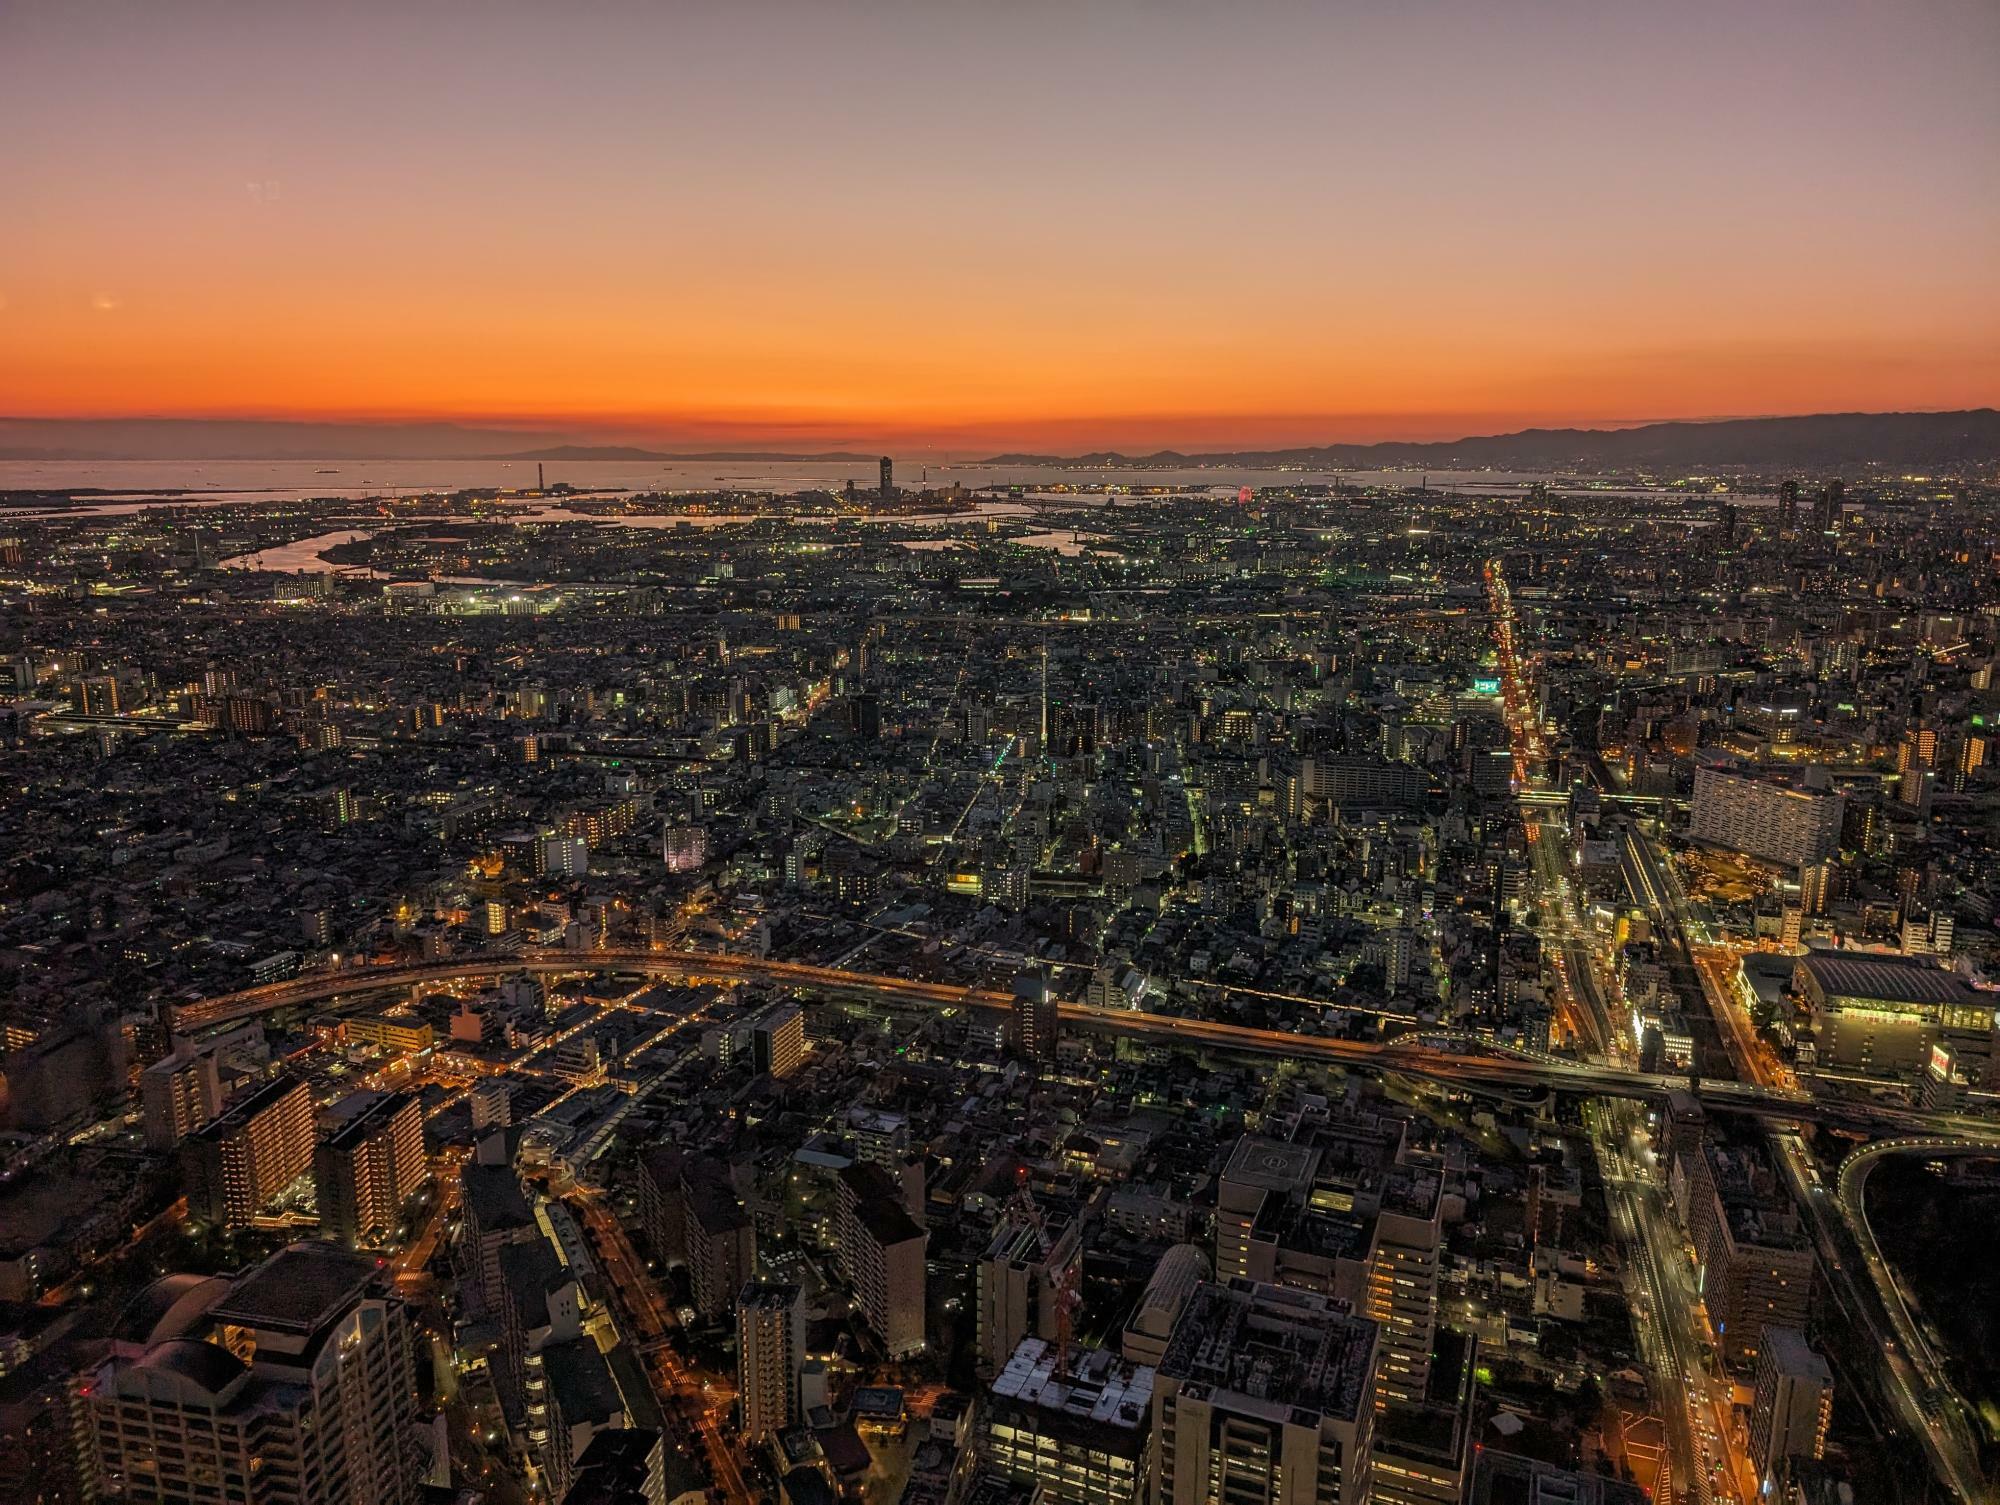 「夜景」モードで撮った夕暮れの写真です。都会の景色や夕焼け空のグラデーションもキレイに記録できています。